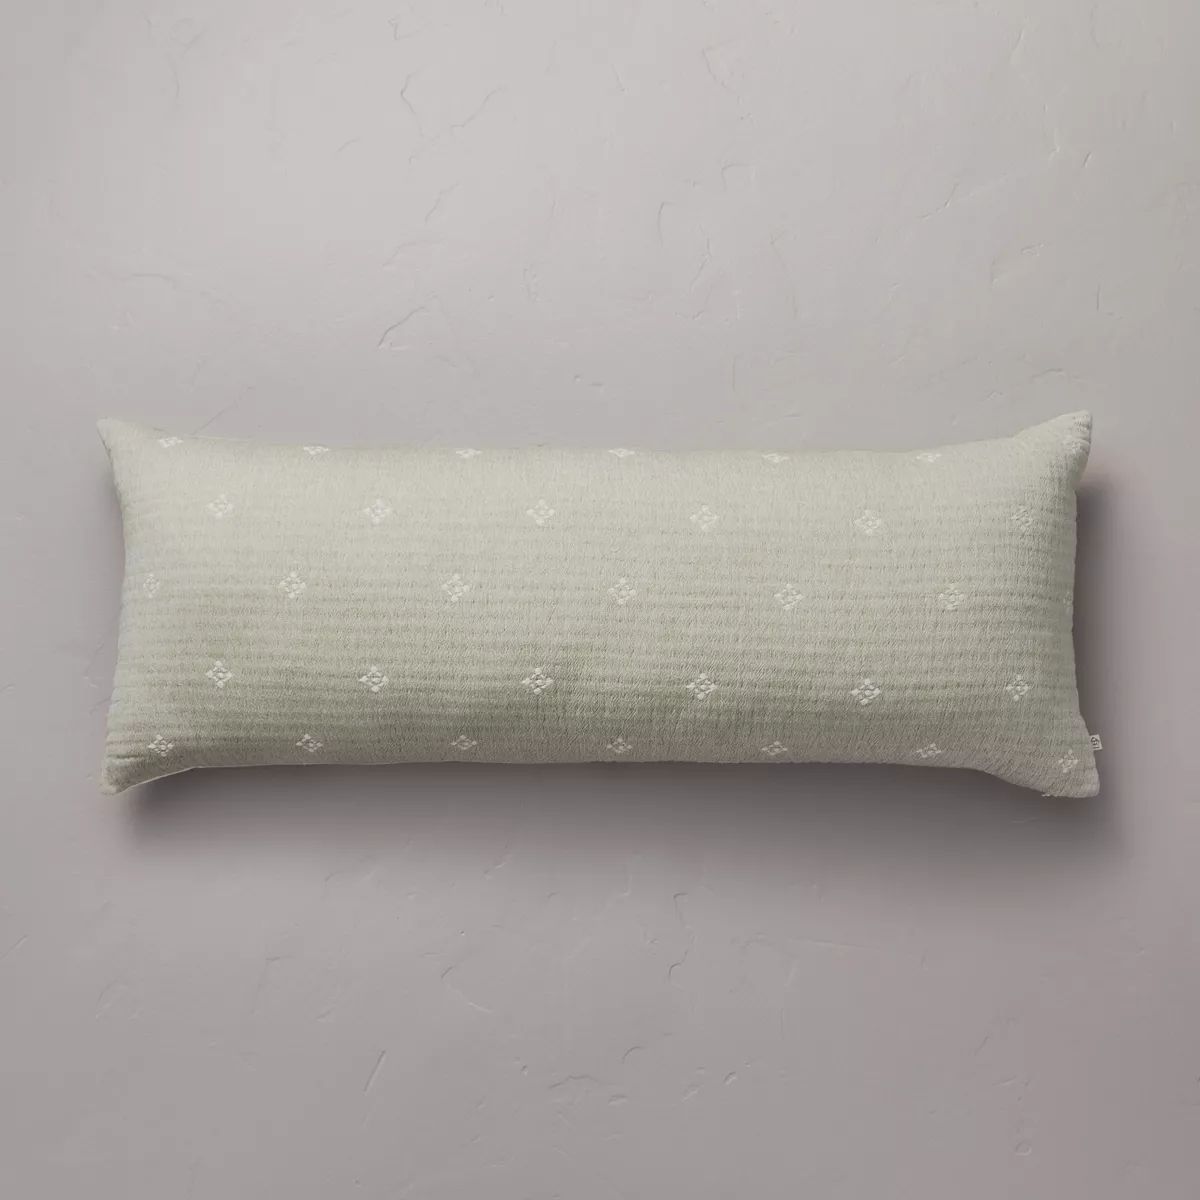 14"x36" Diamond Jacquard Lumbar Bed Pillow - Hearth & Hand™ with Magnolia | Target